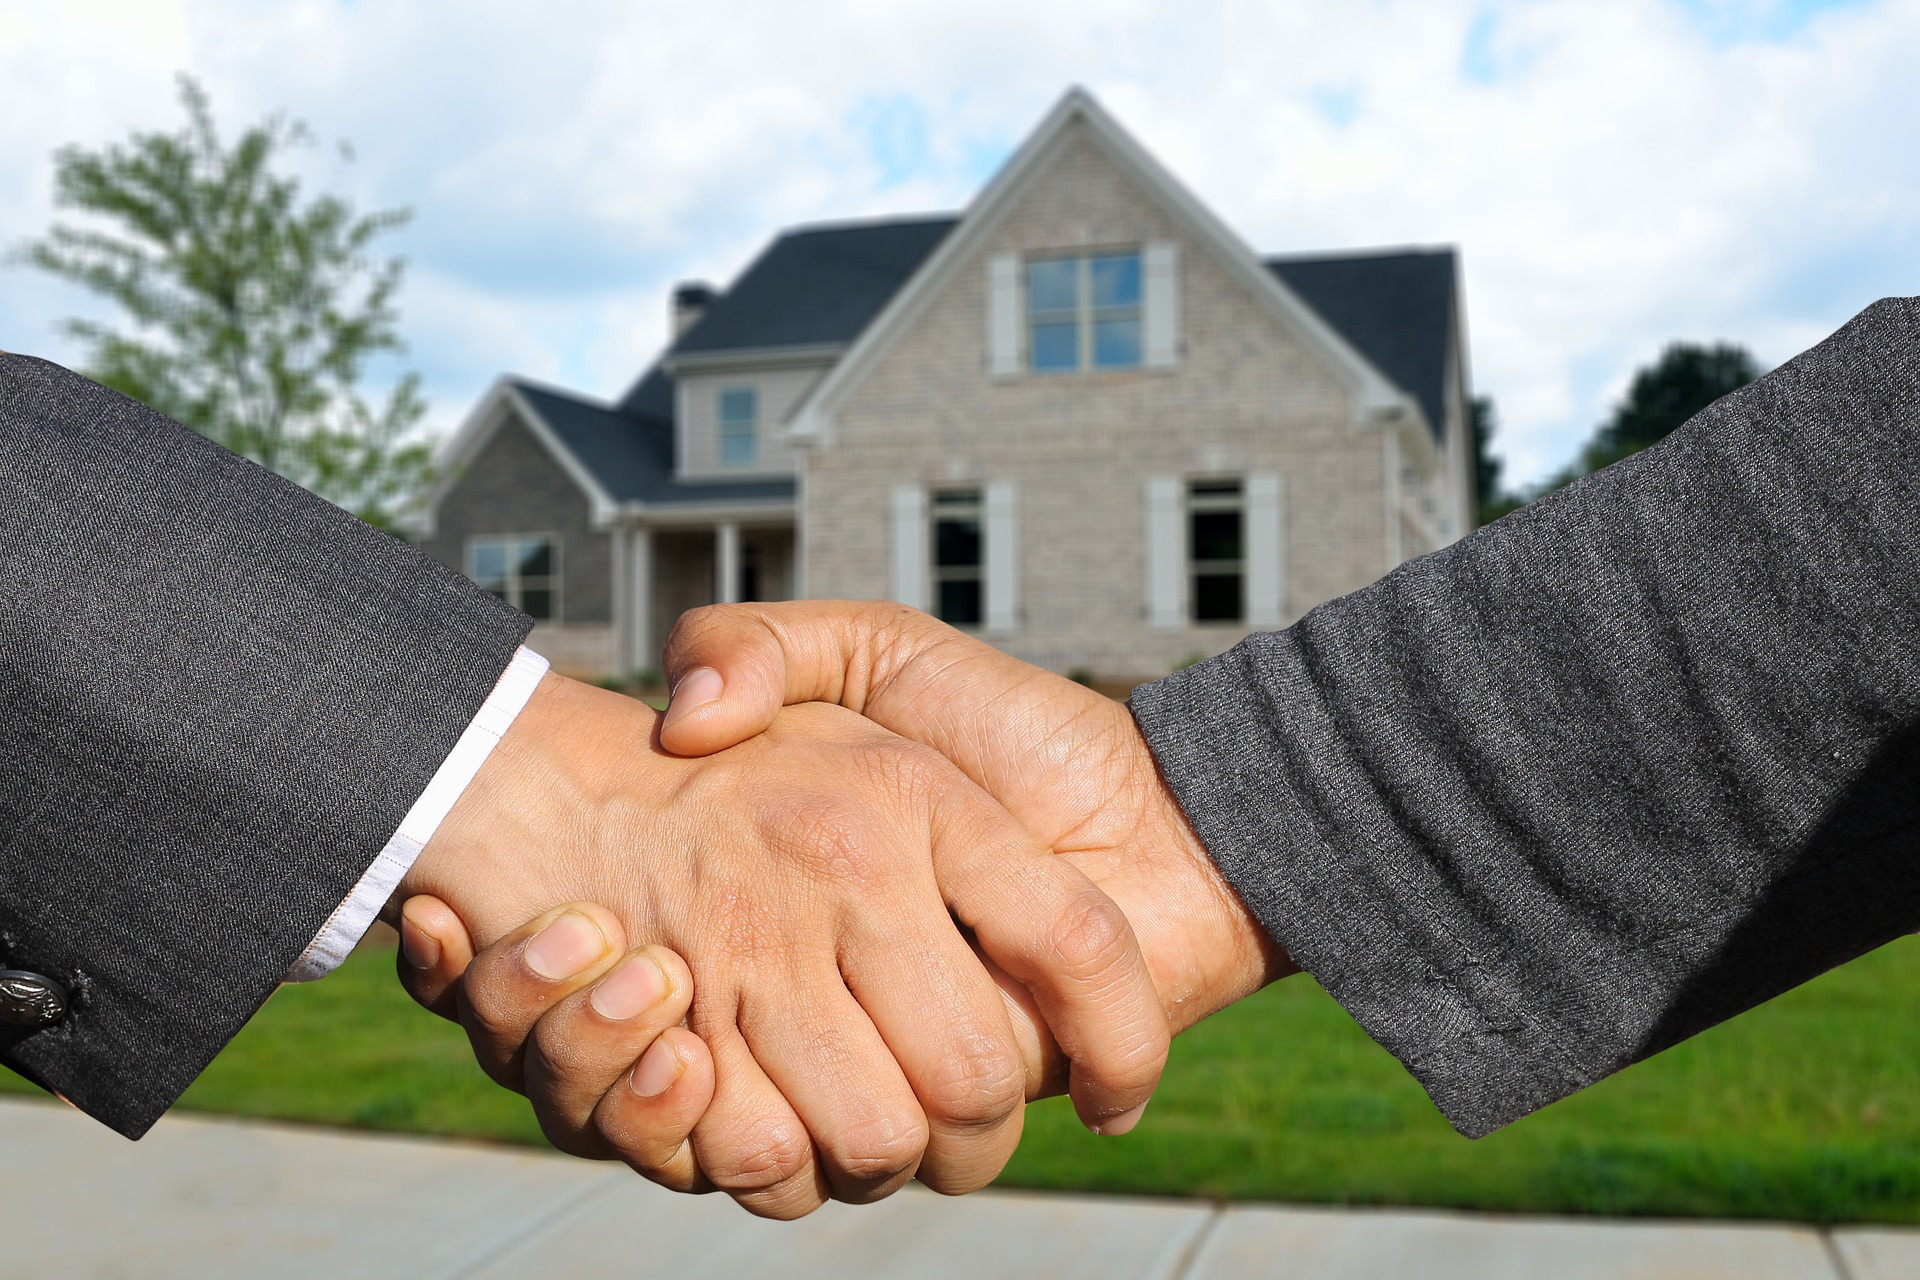 Comment accélérer le processus de vente d'une maison?